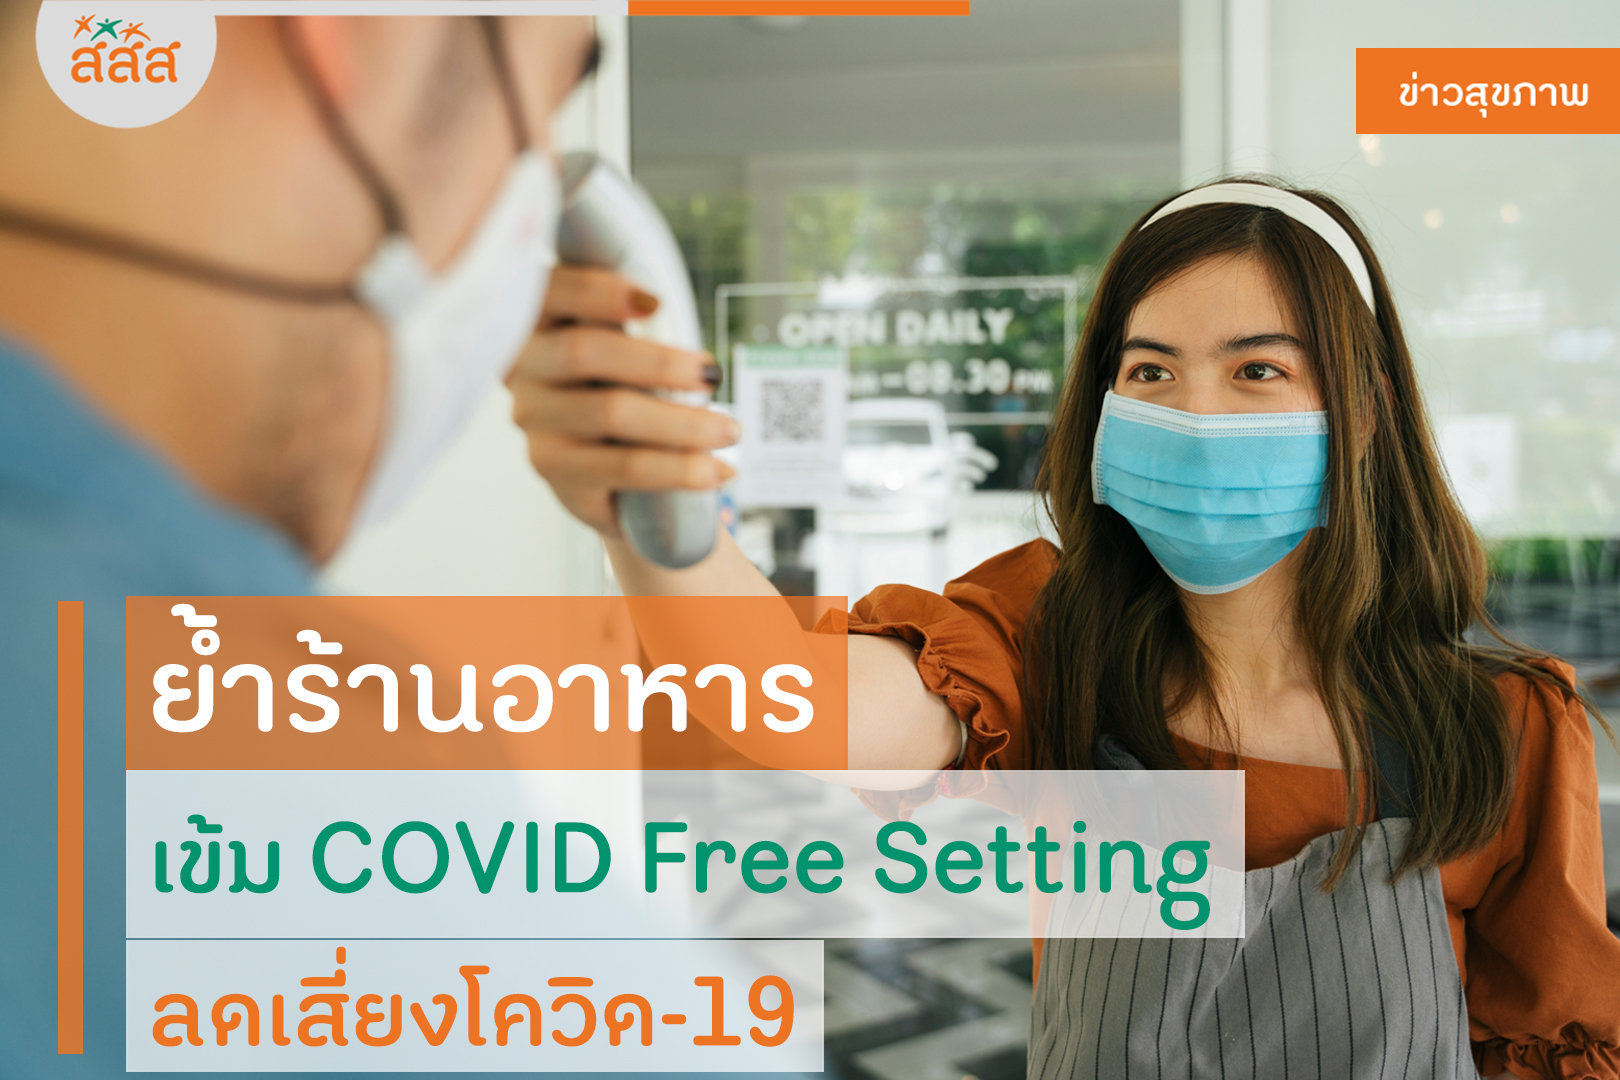 ย้ำร้านอาหารเข้ม COVID Free Setting ลดเสี่ยงโควิด-19 thaihealth